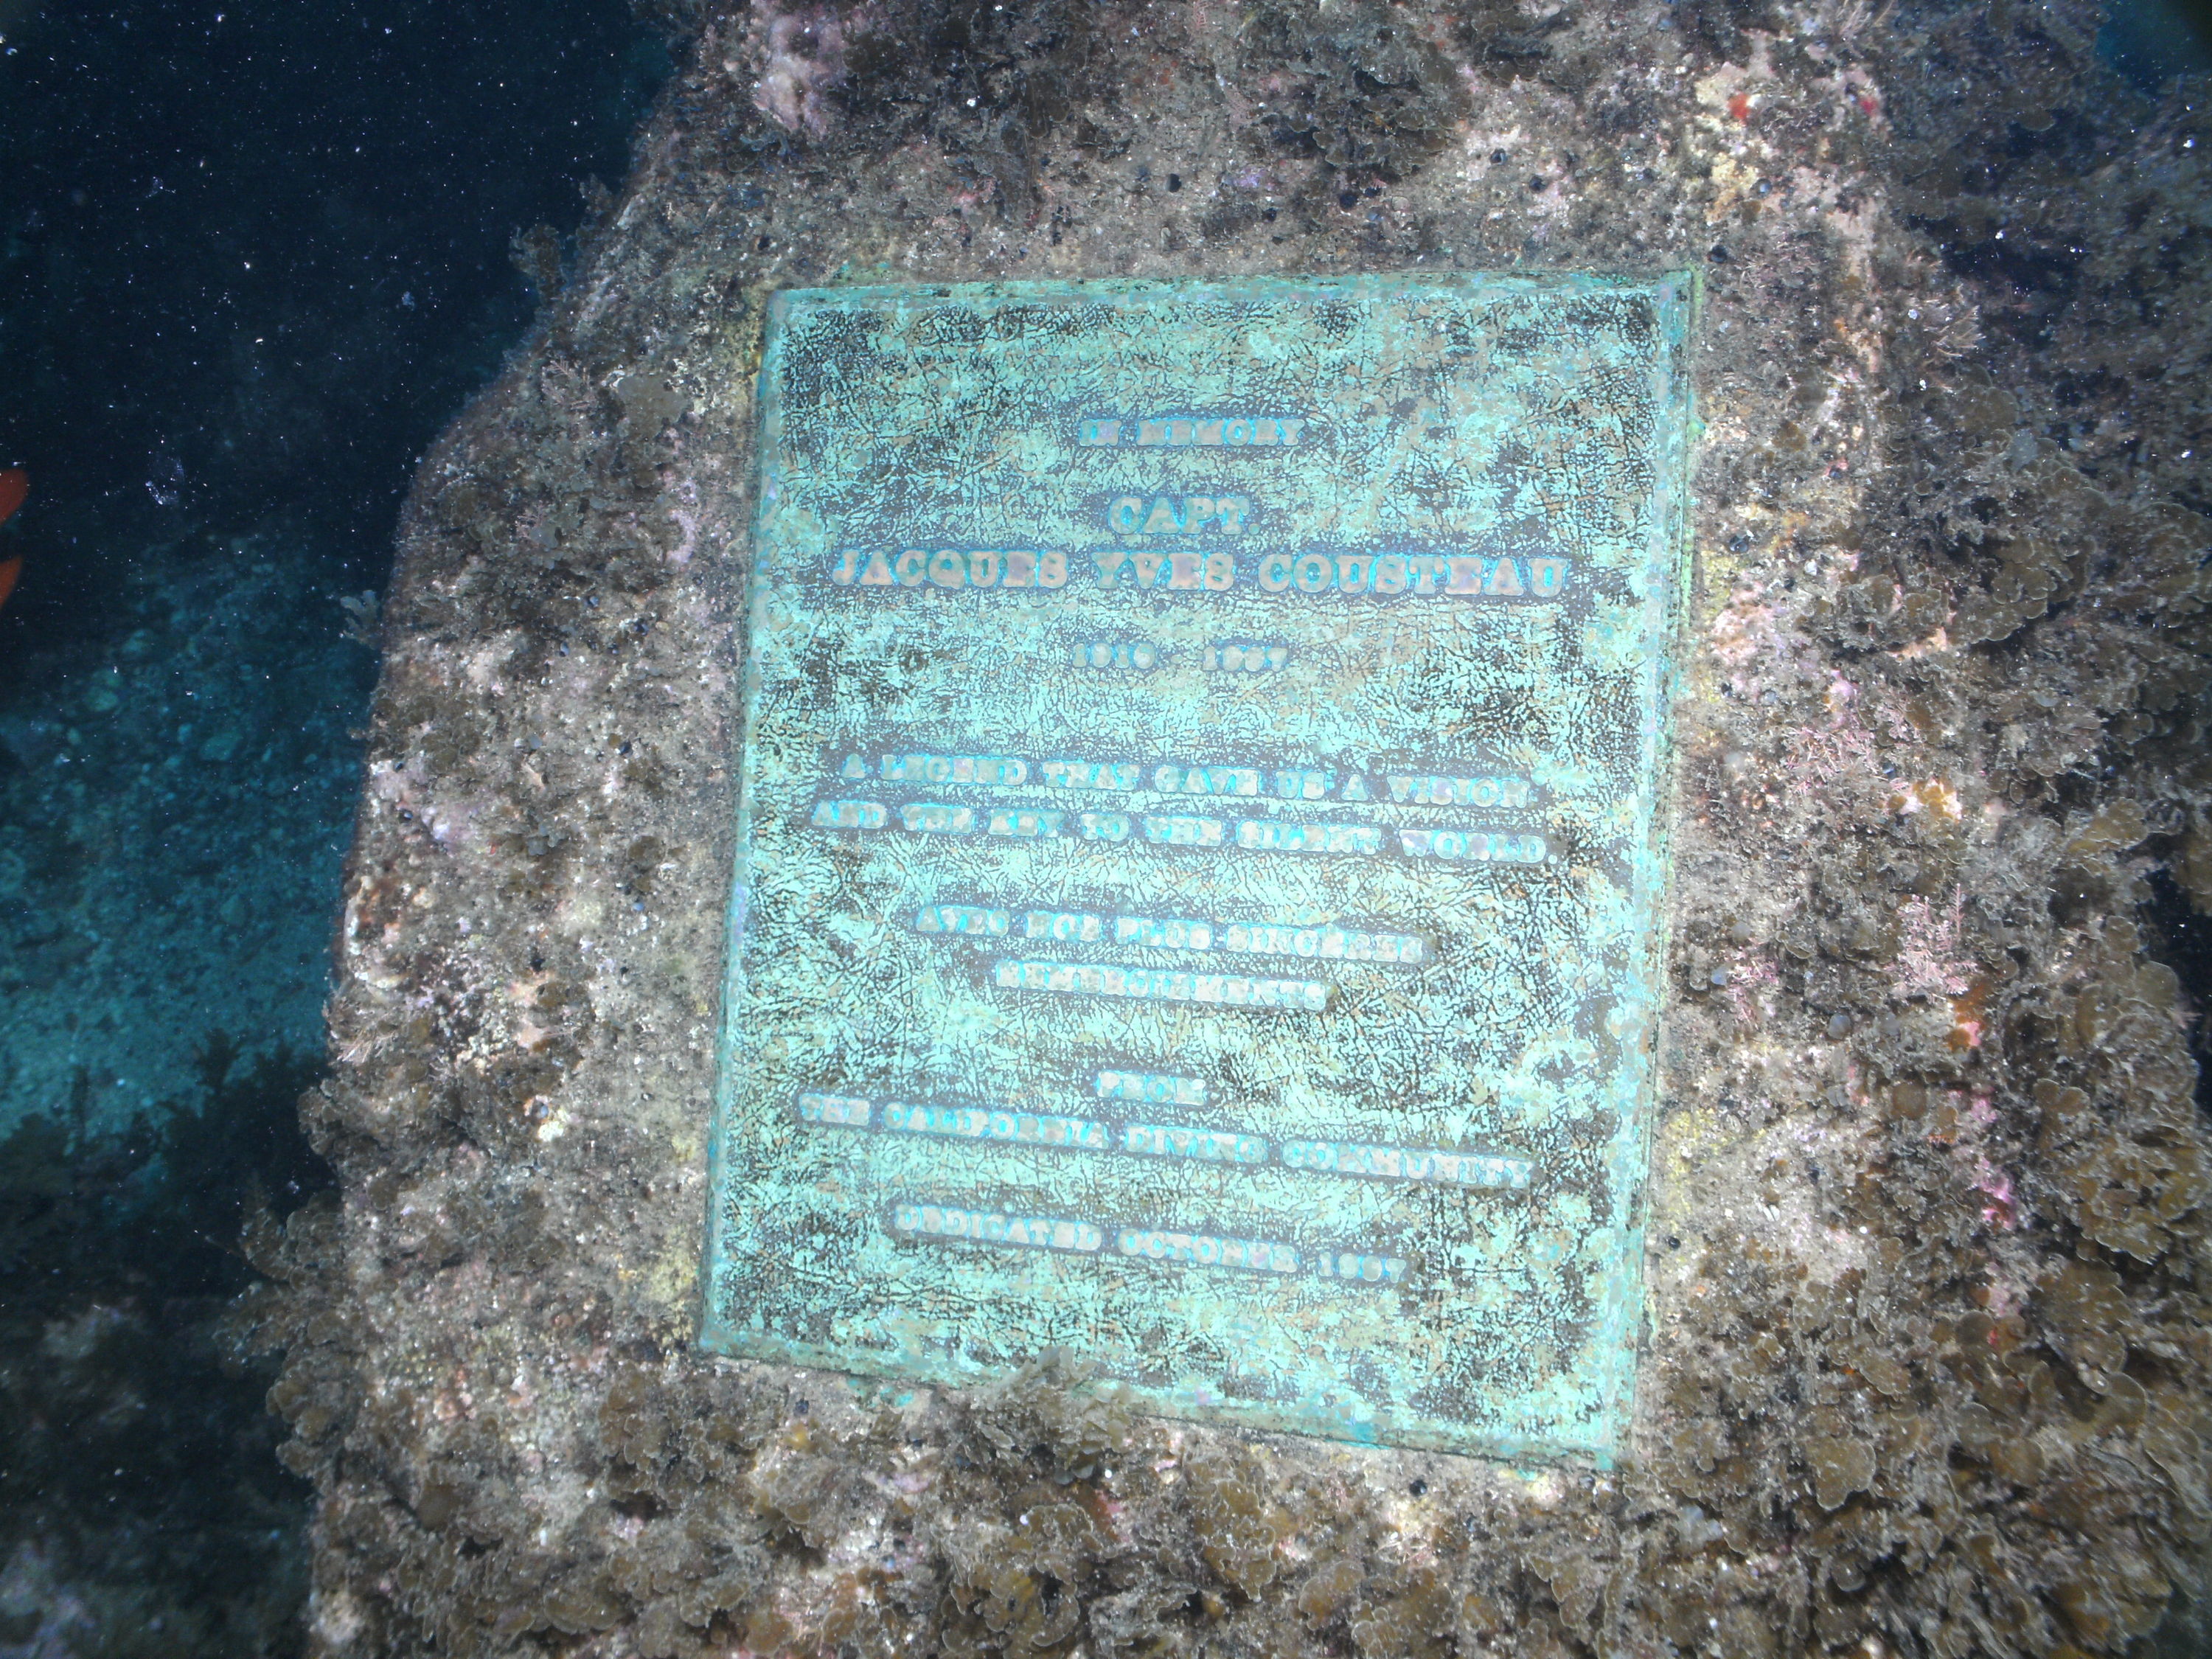 Jacques Cousteau Memorial Plaque